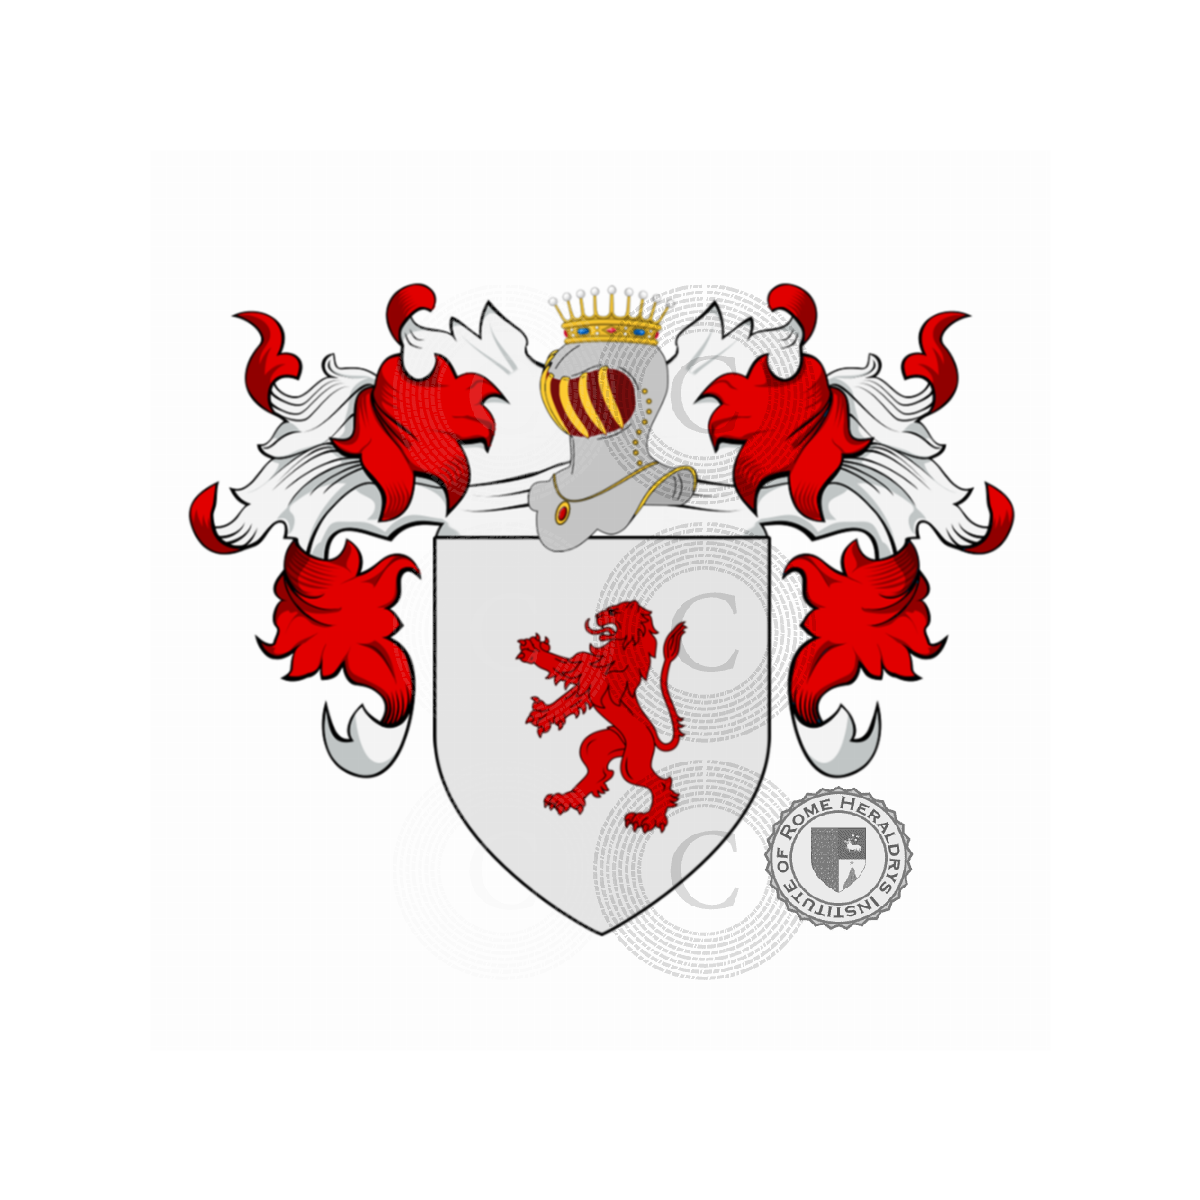 Wappen der FamilieRossi, de Rossi,de Rubeis,Rosso,Russo